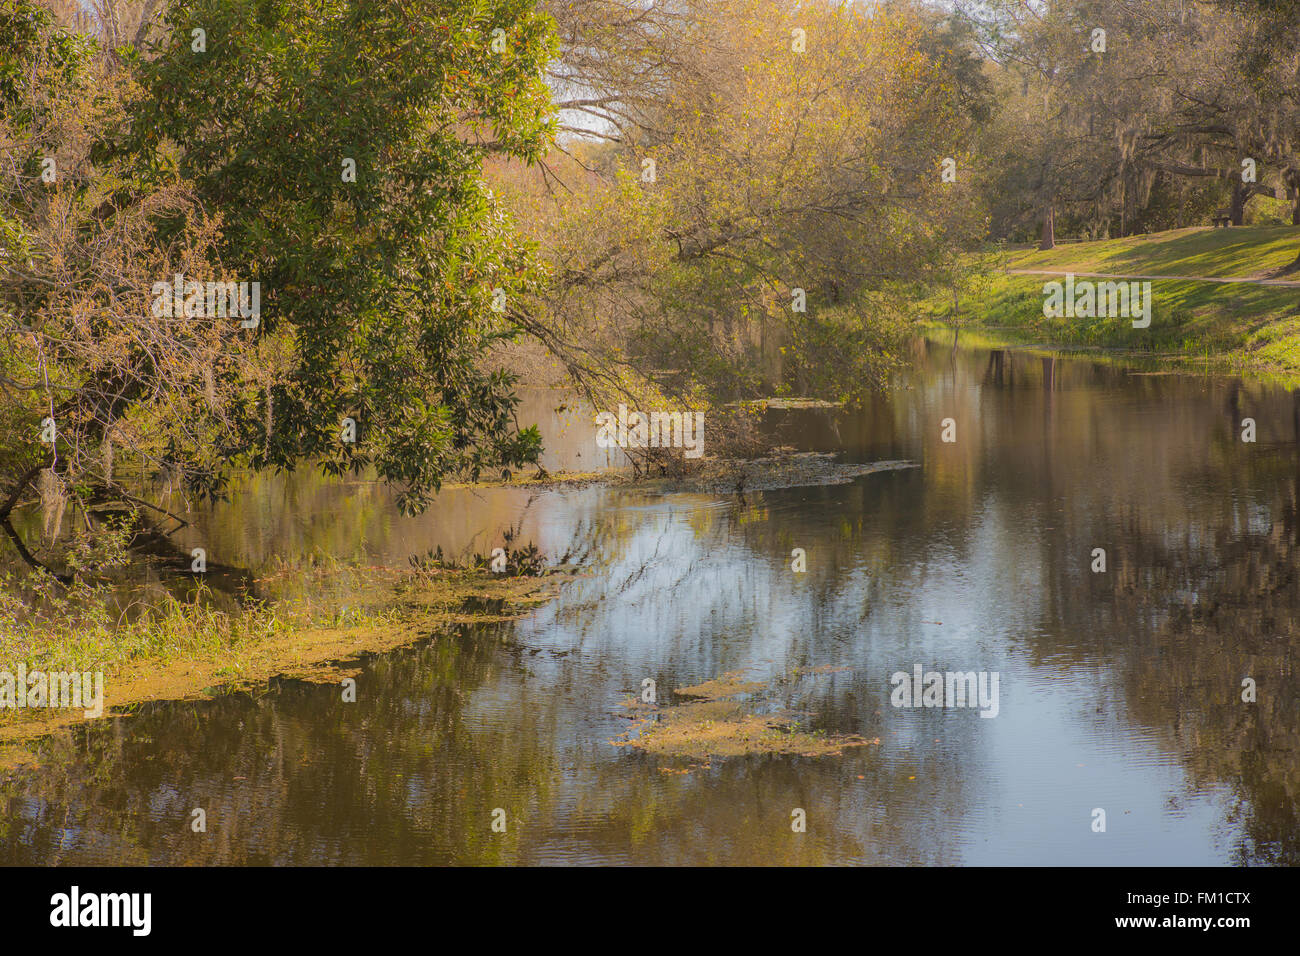 Ansa del fiume - Una scenic river in Florida con alberi raggiungendo oltre l'acqua Foto Stock